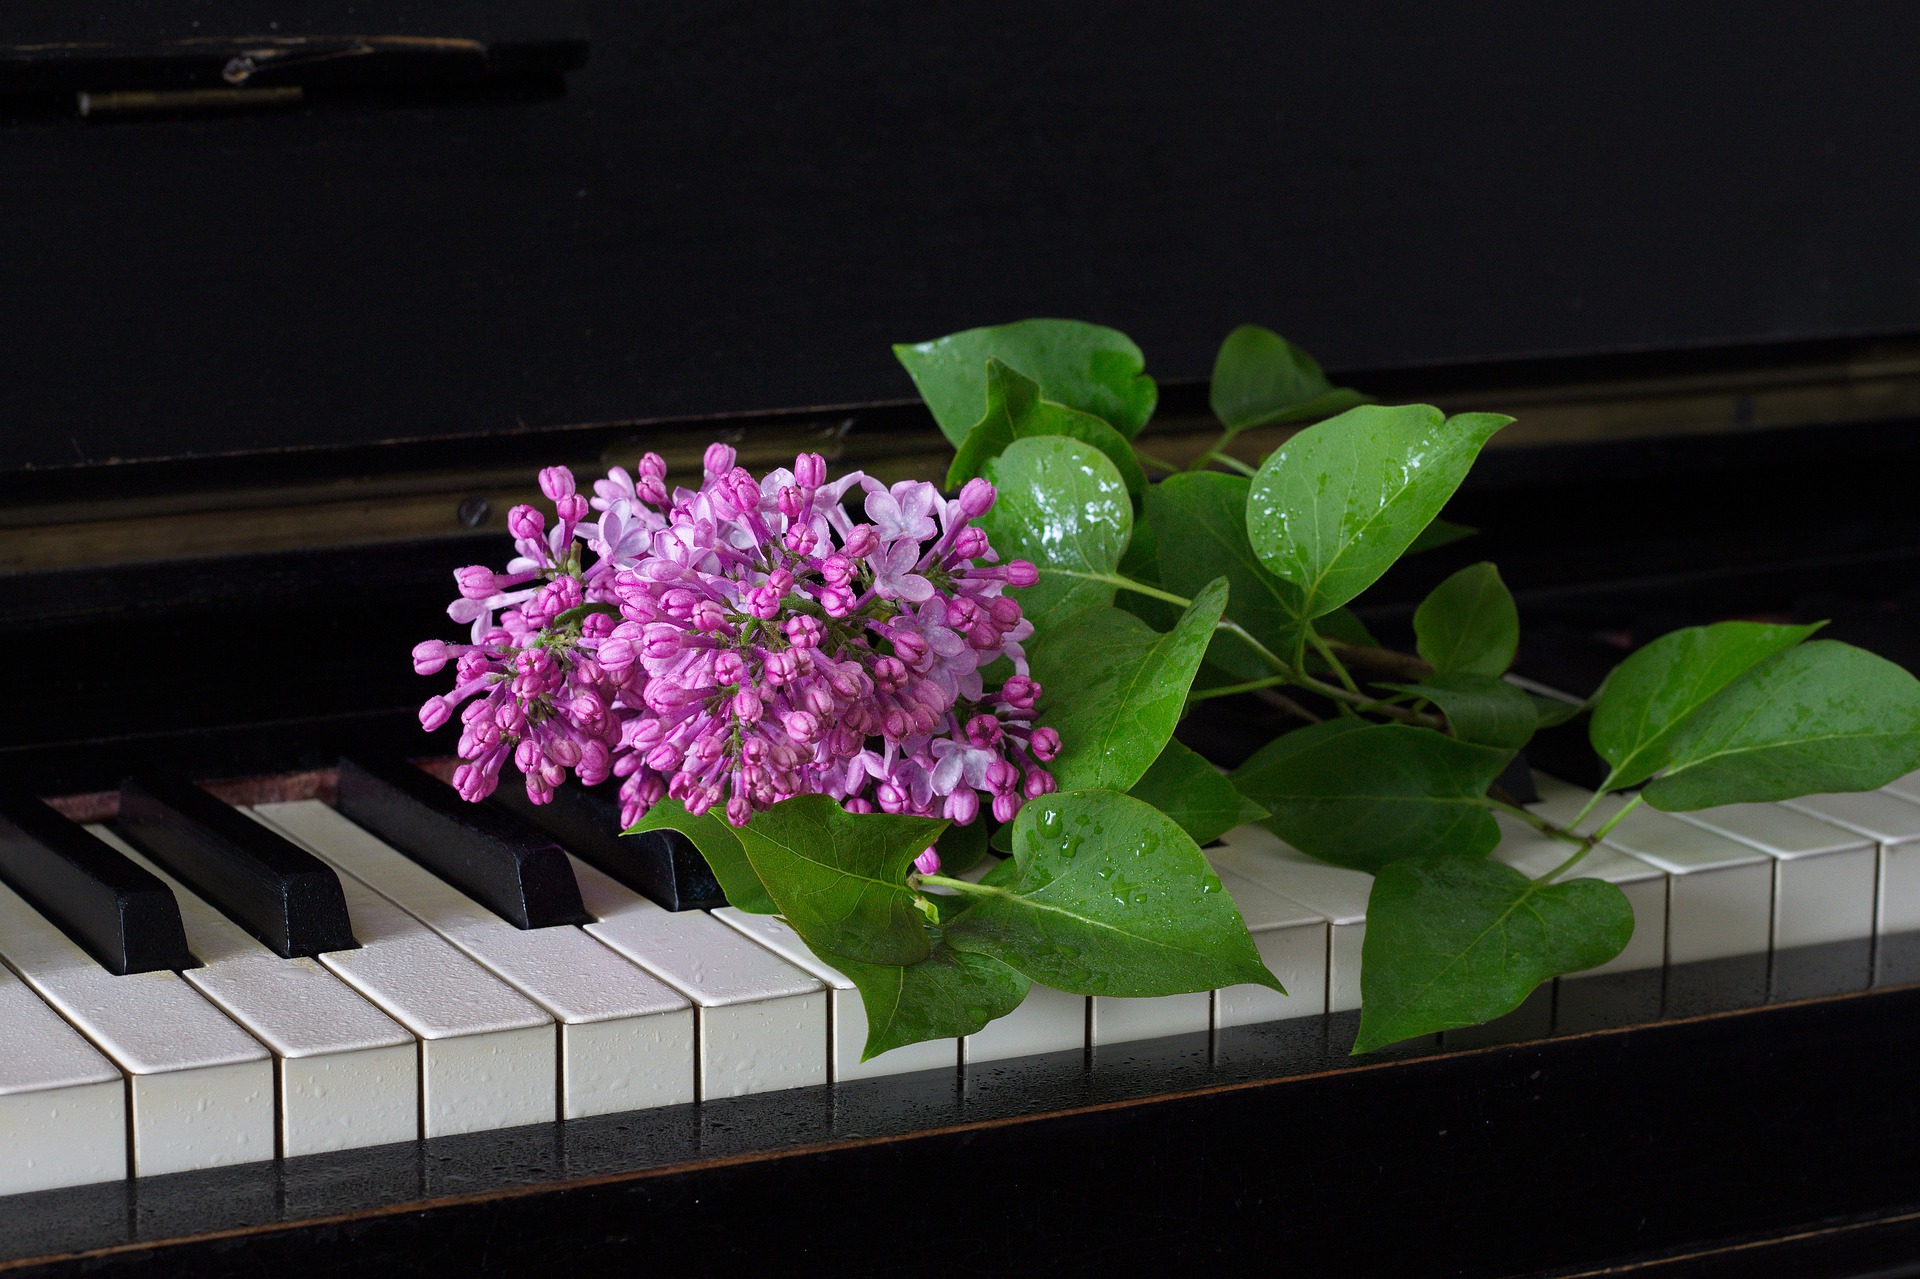 Vaaleanpunainen kukka pianon musta-valkoisten koskettimien päällä.